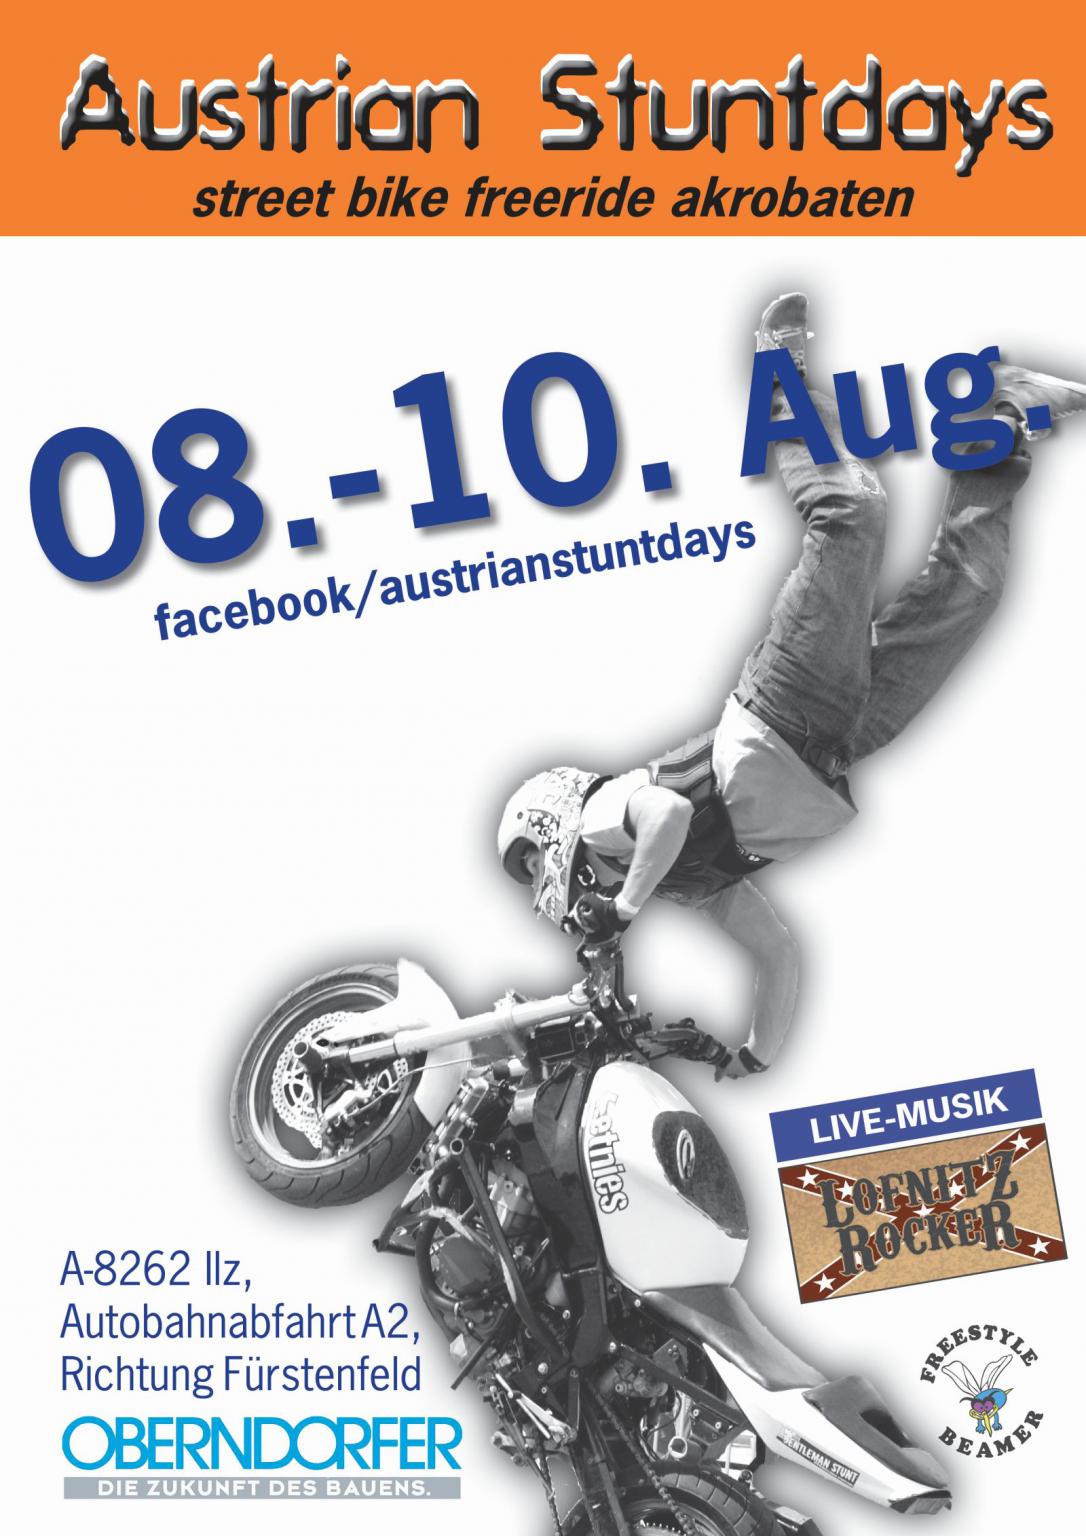 http://www.motorrad-bilder.at/slideshows/291/009472/austrian_stuntdays_1.jpg